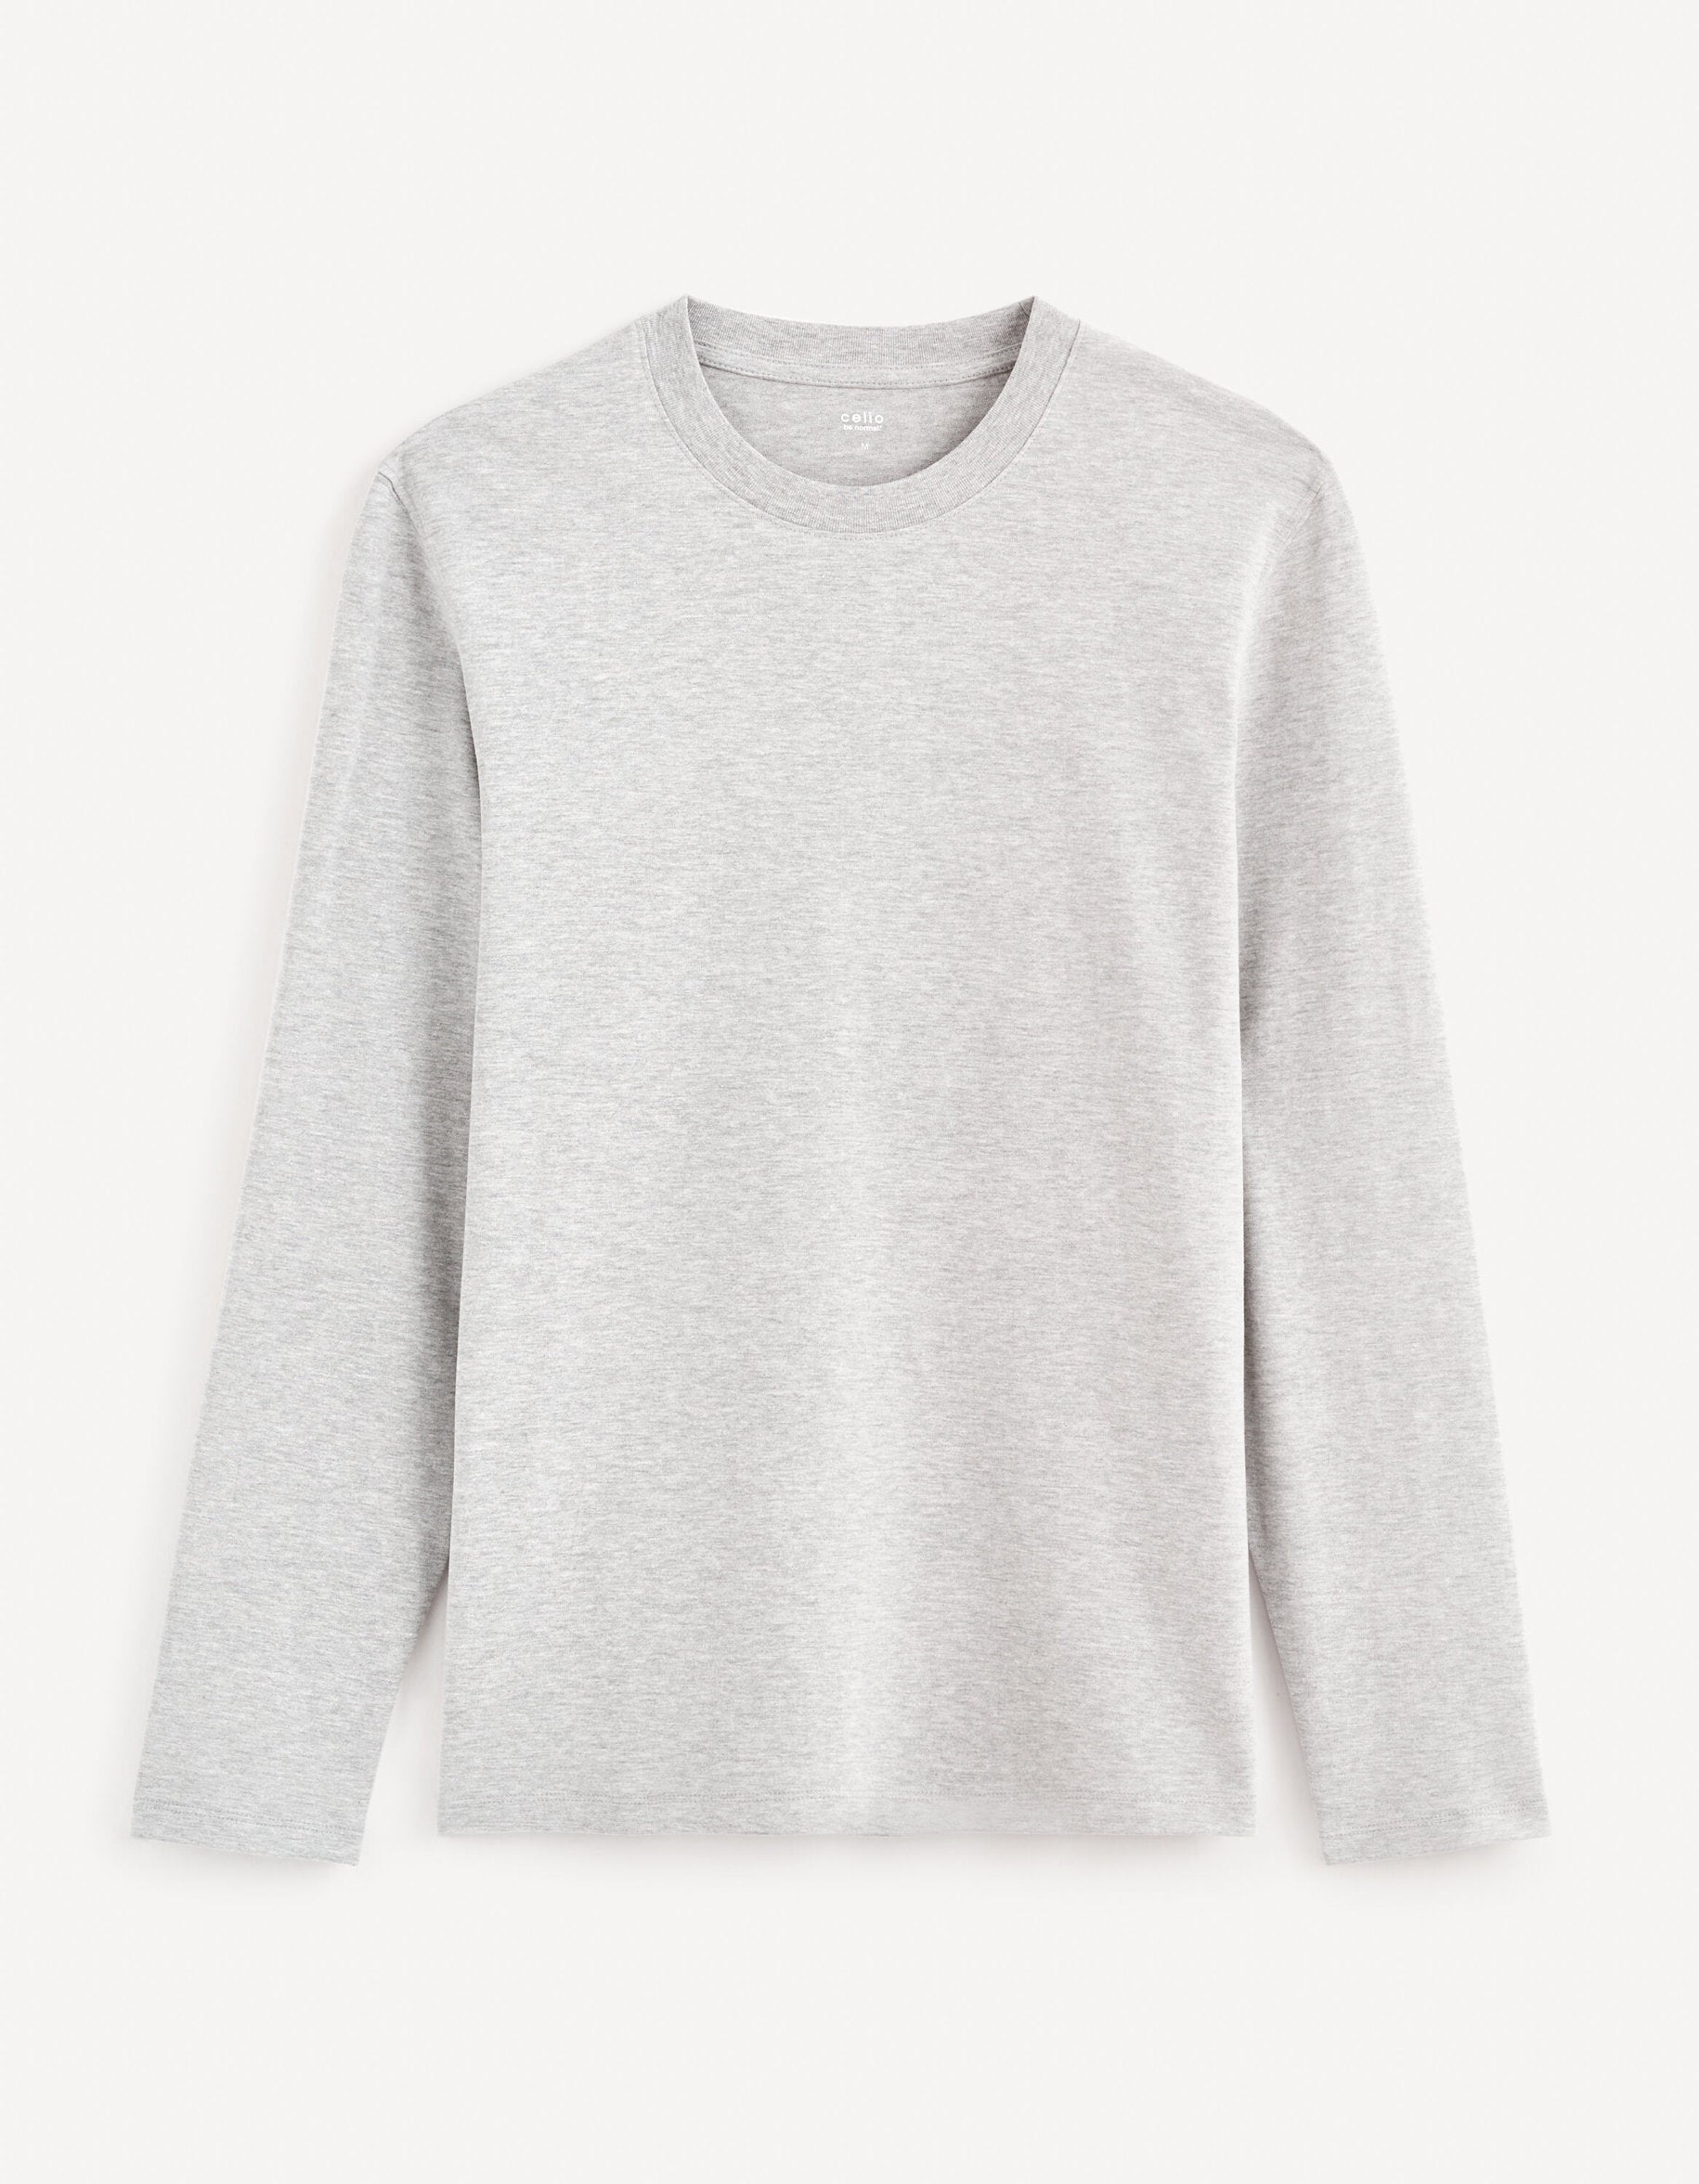 100% Cotton Round Neck T-Shirt - Heather Grey_CESOLACEML_GREY MEL_01